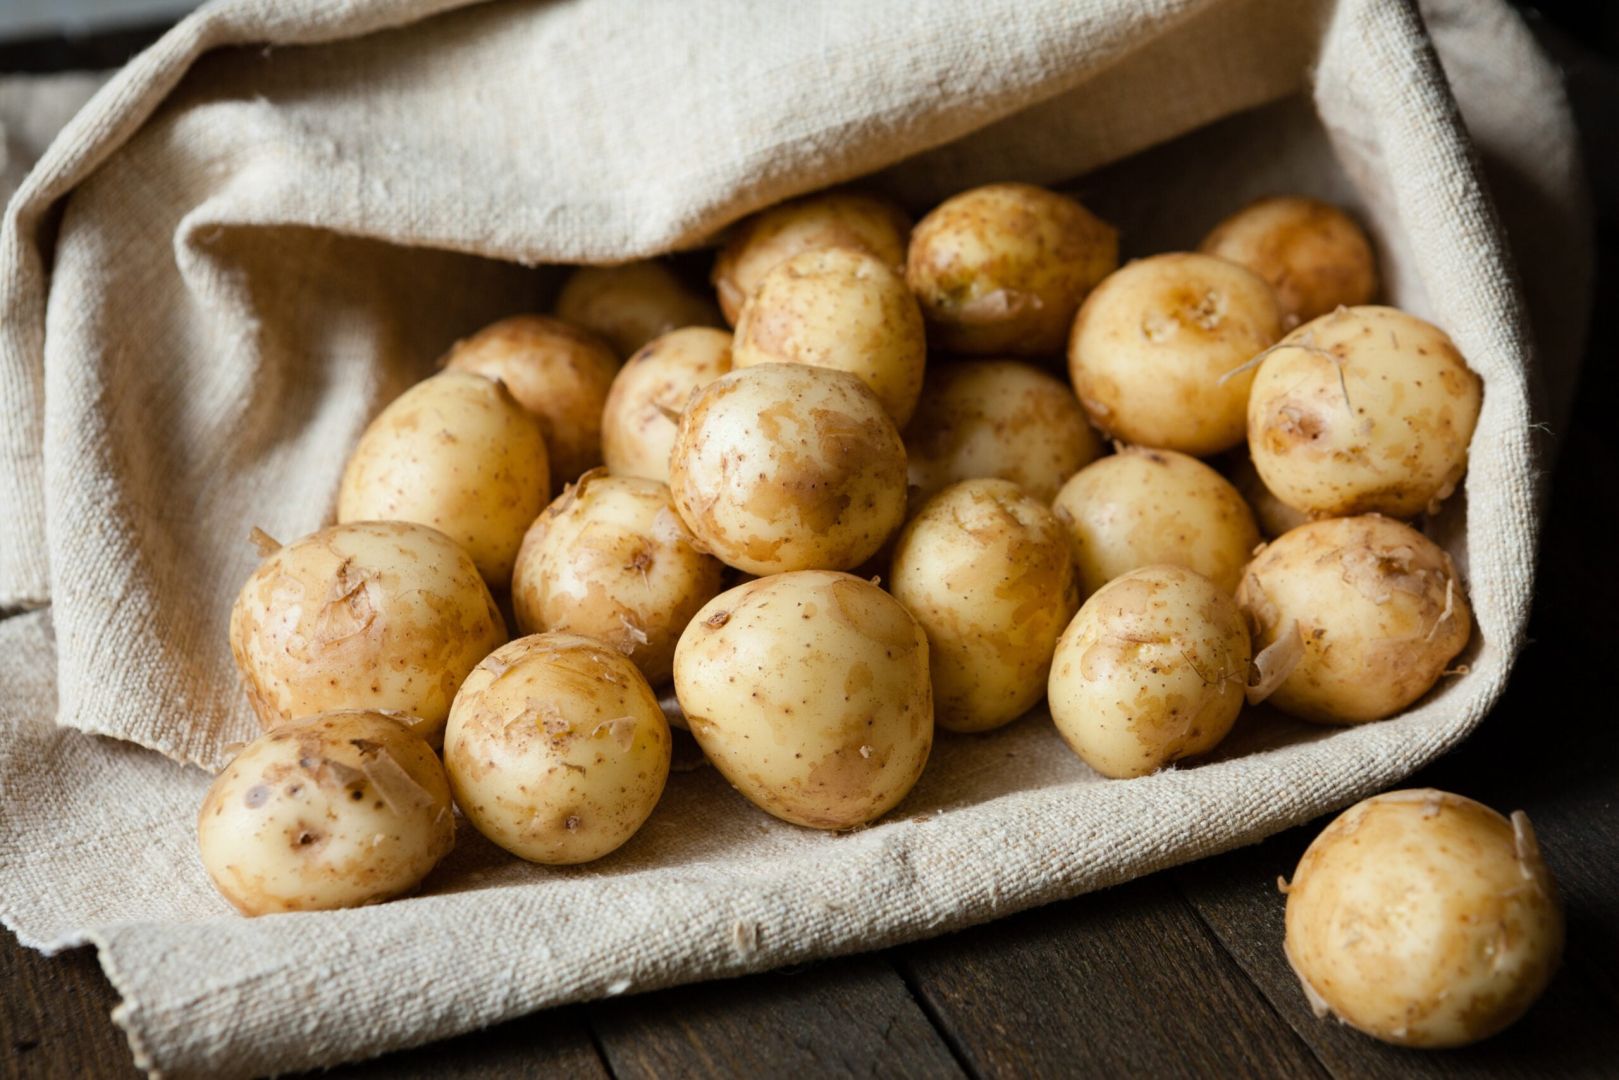 Kazakhstan significantly increases potato exports to Uzbekistan